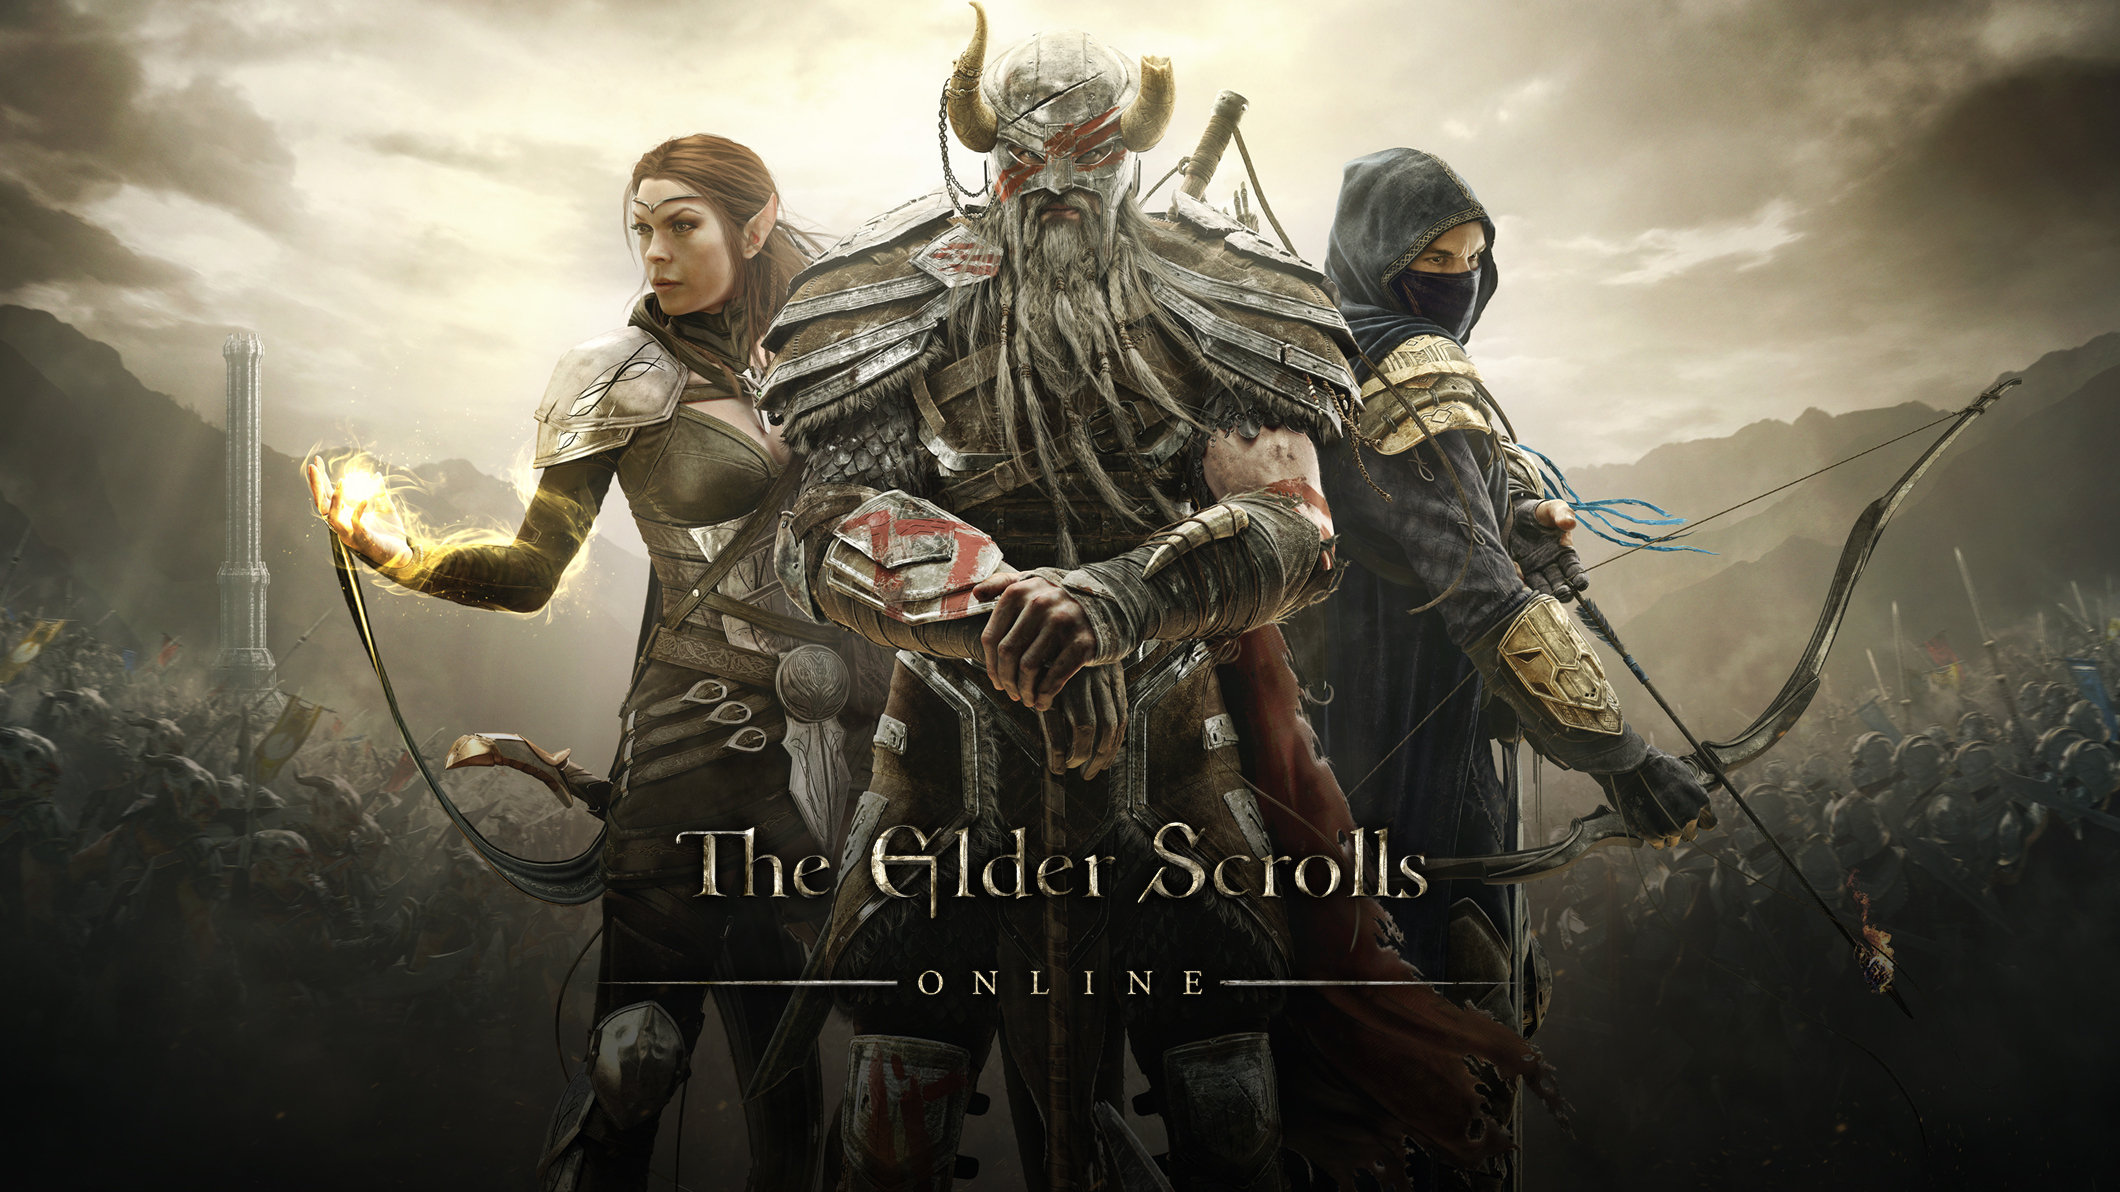 Картинка: The Elder Scrolls, online, лучник, игра, война, сражения